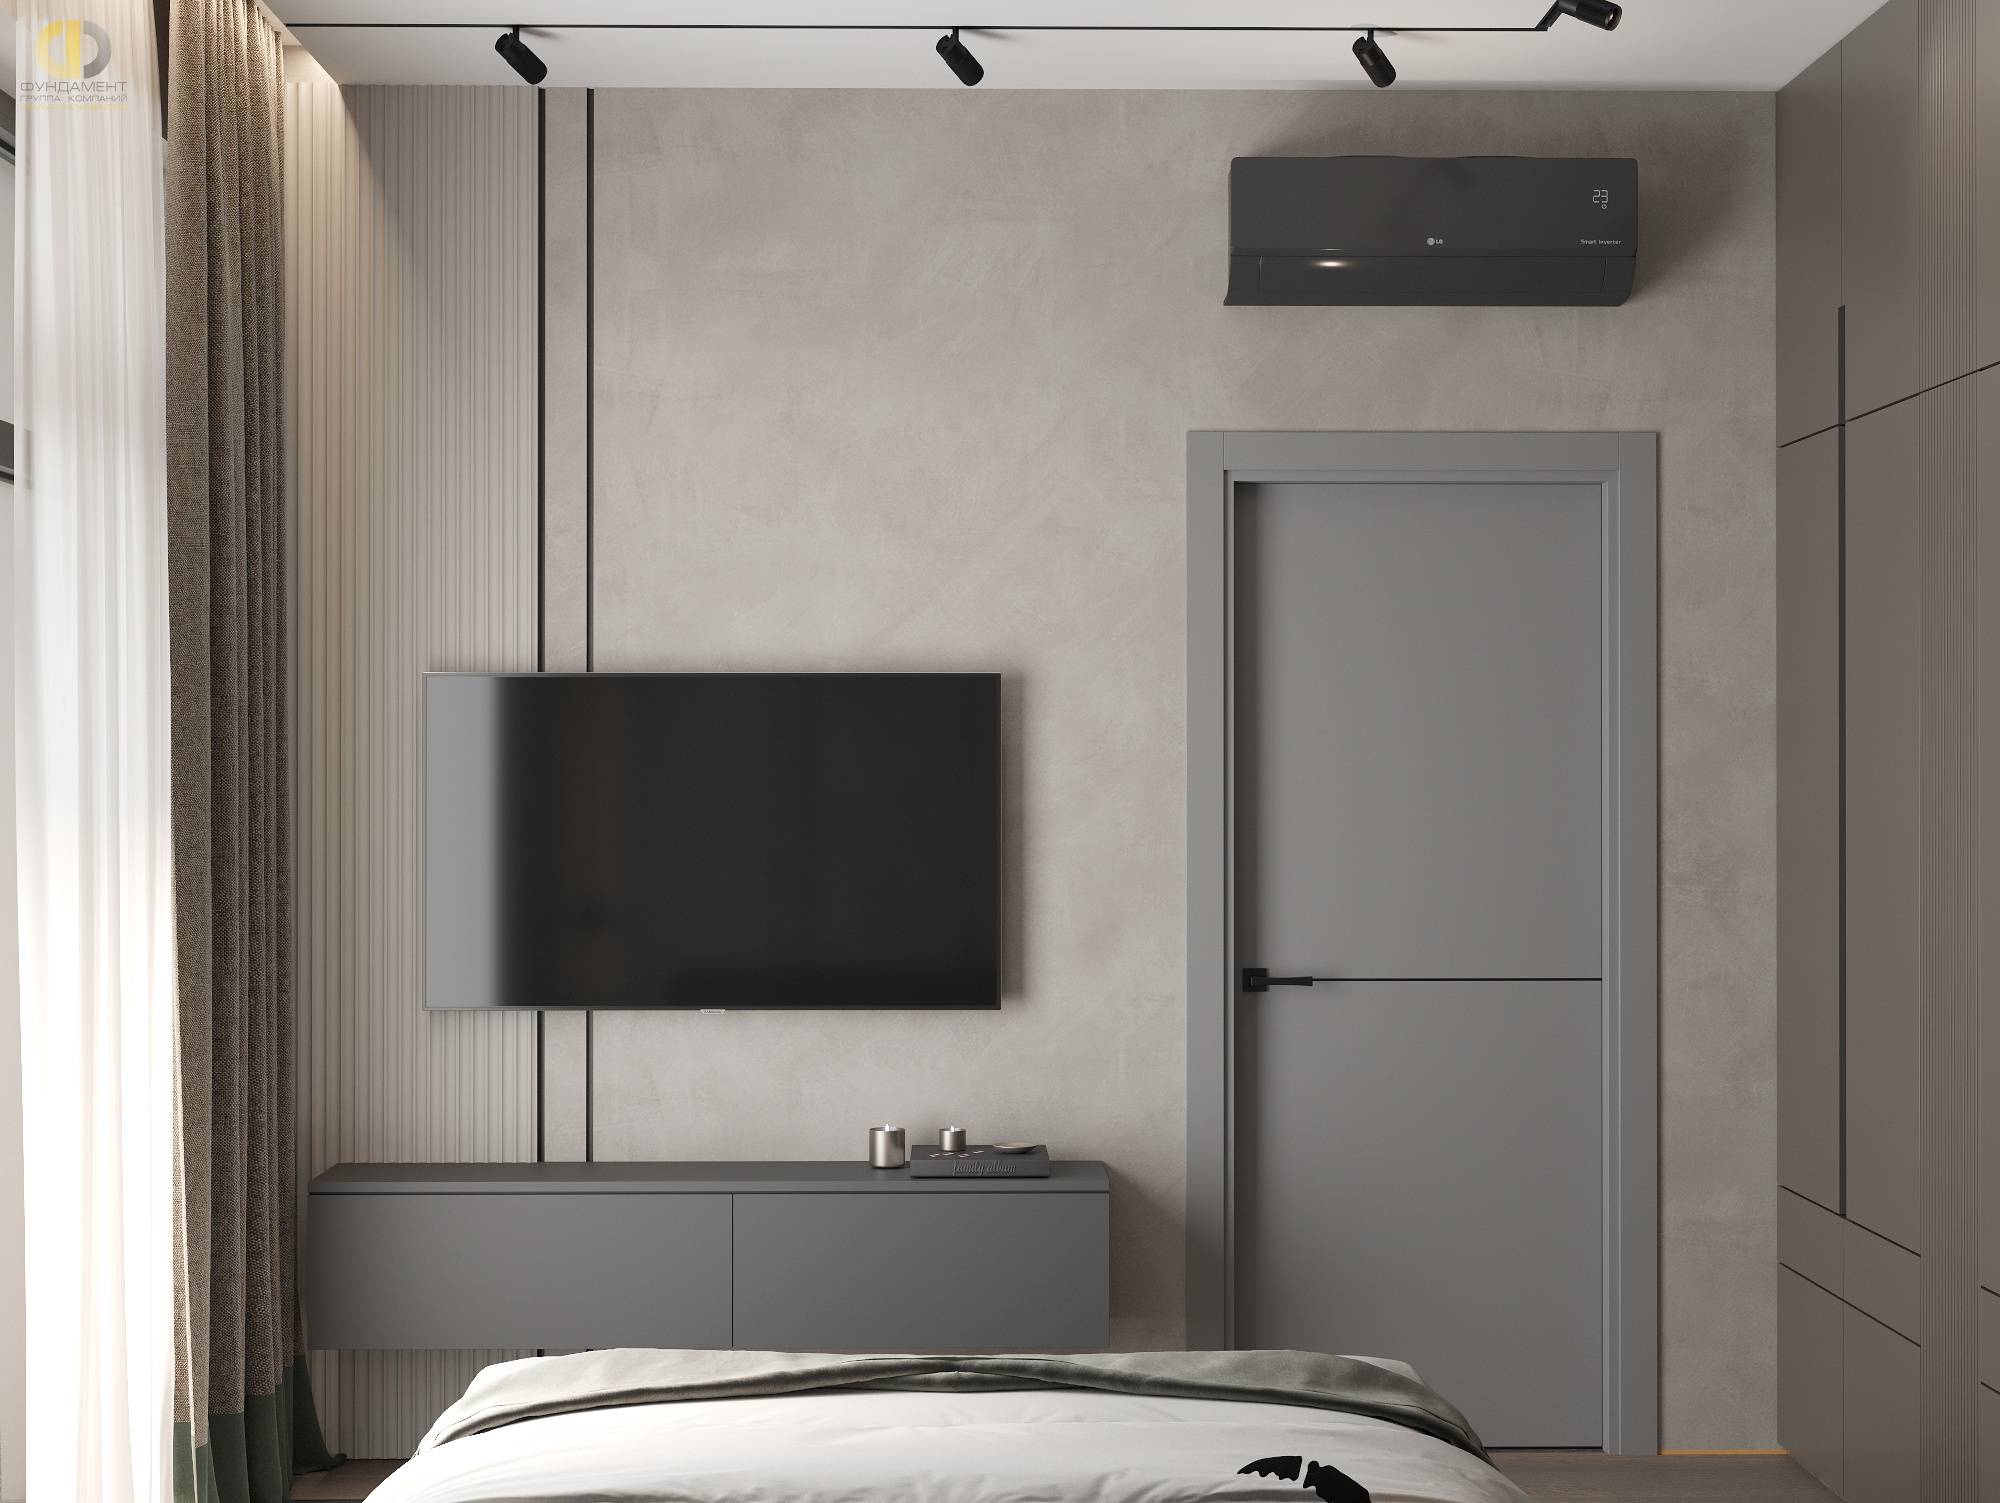 Дизайн спальни в стиле cовременном – фото 6